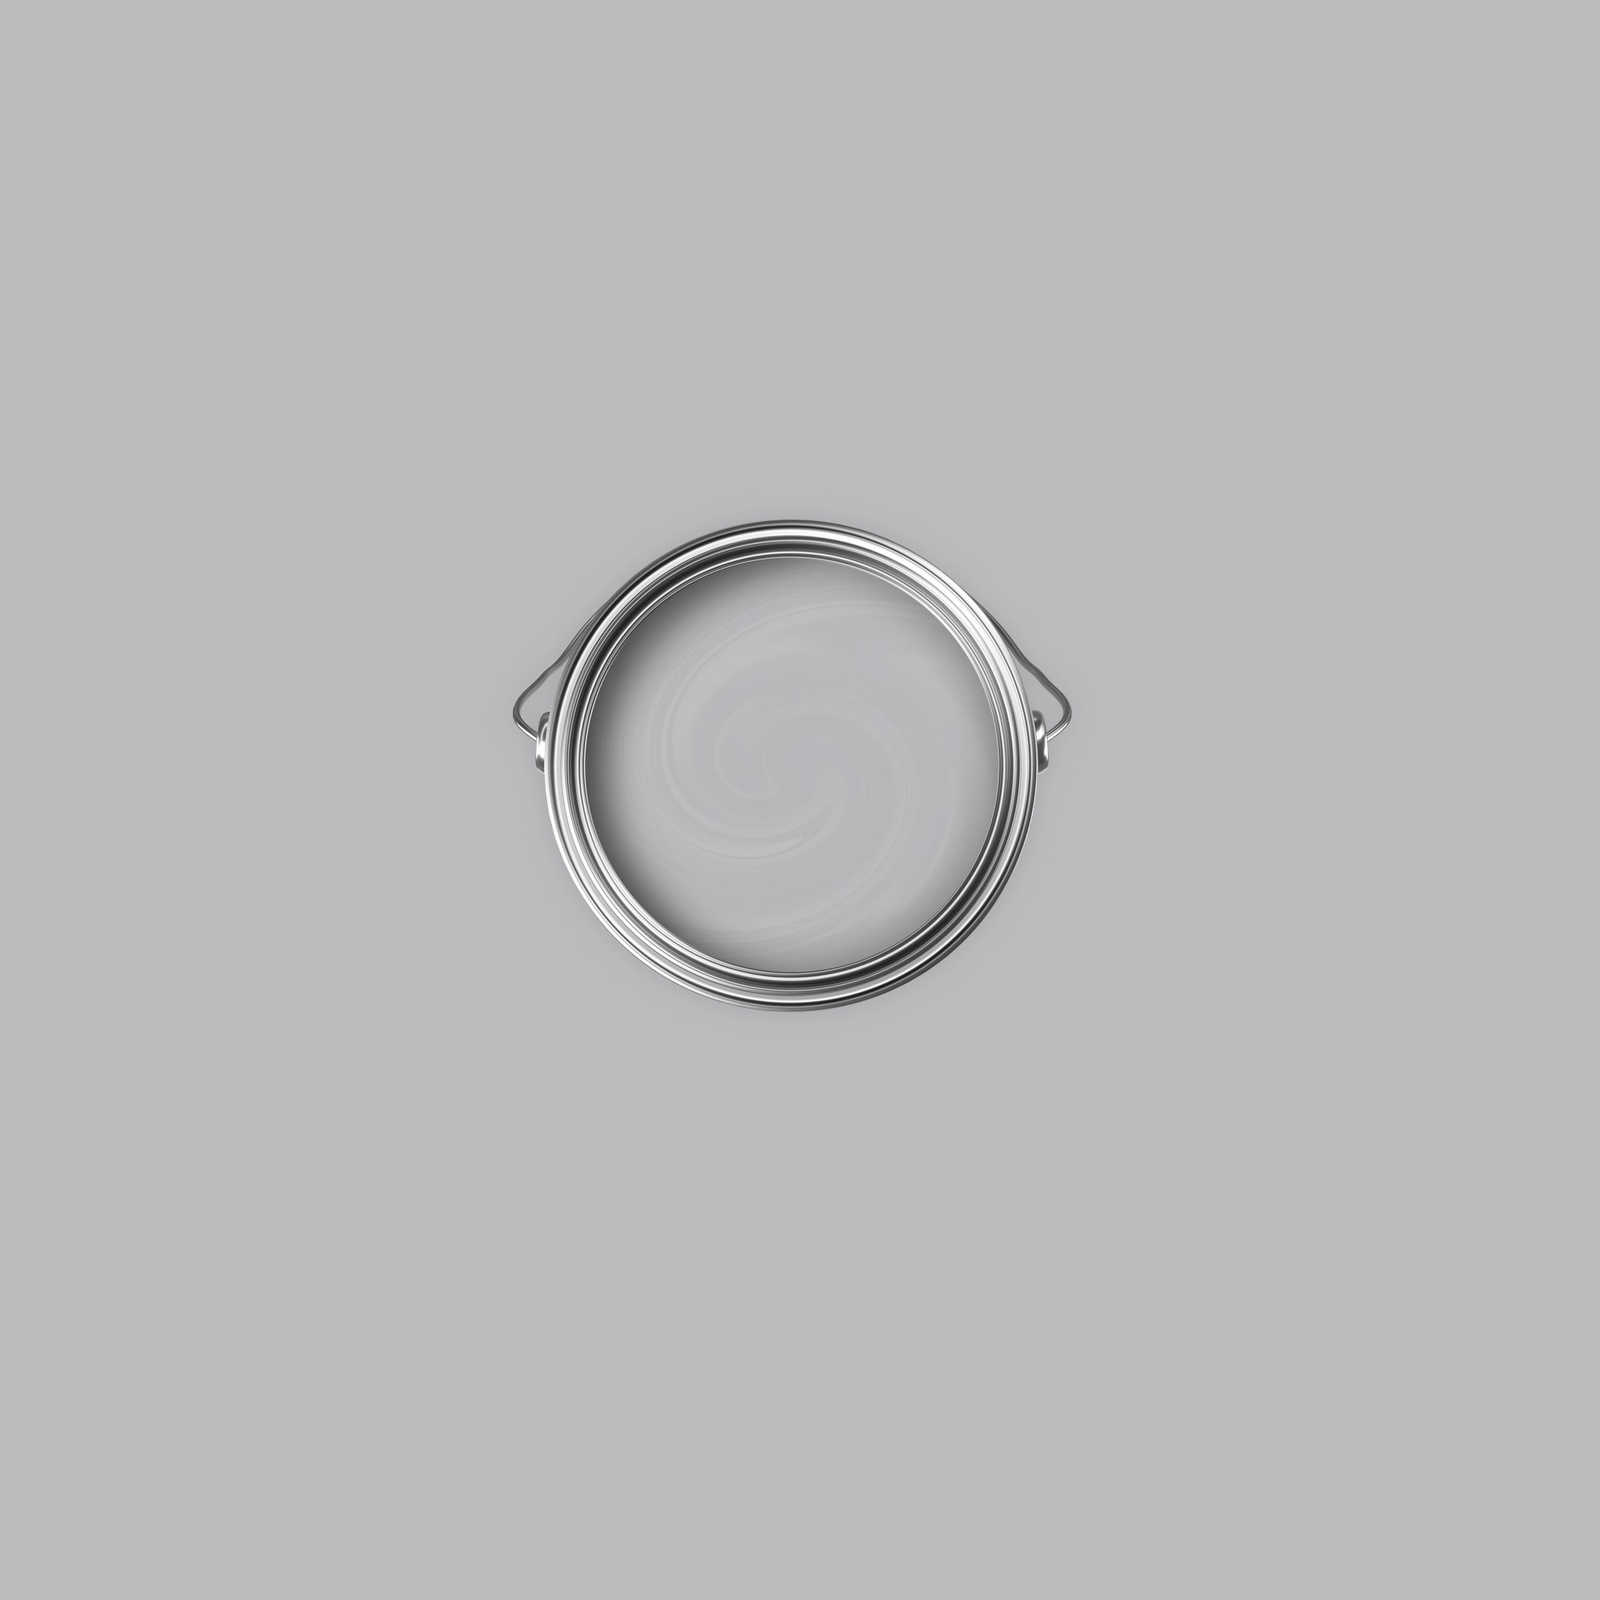             Premium Wandfarbe ausgeglichenes Silber »Industrial Grey« NW101 – 1 Liter
        